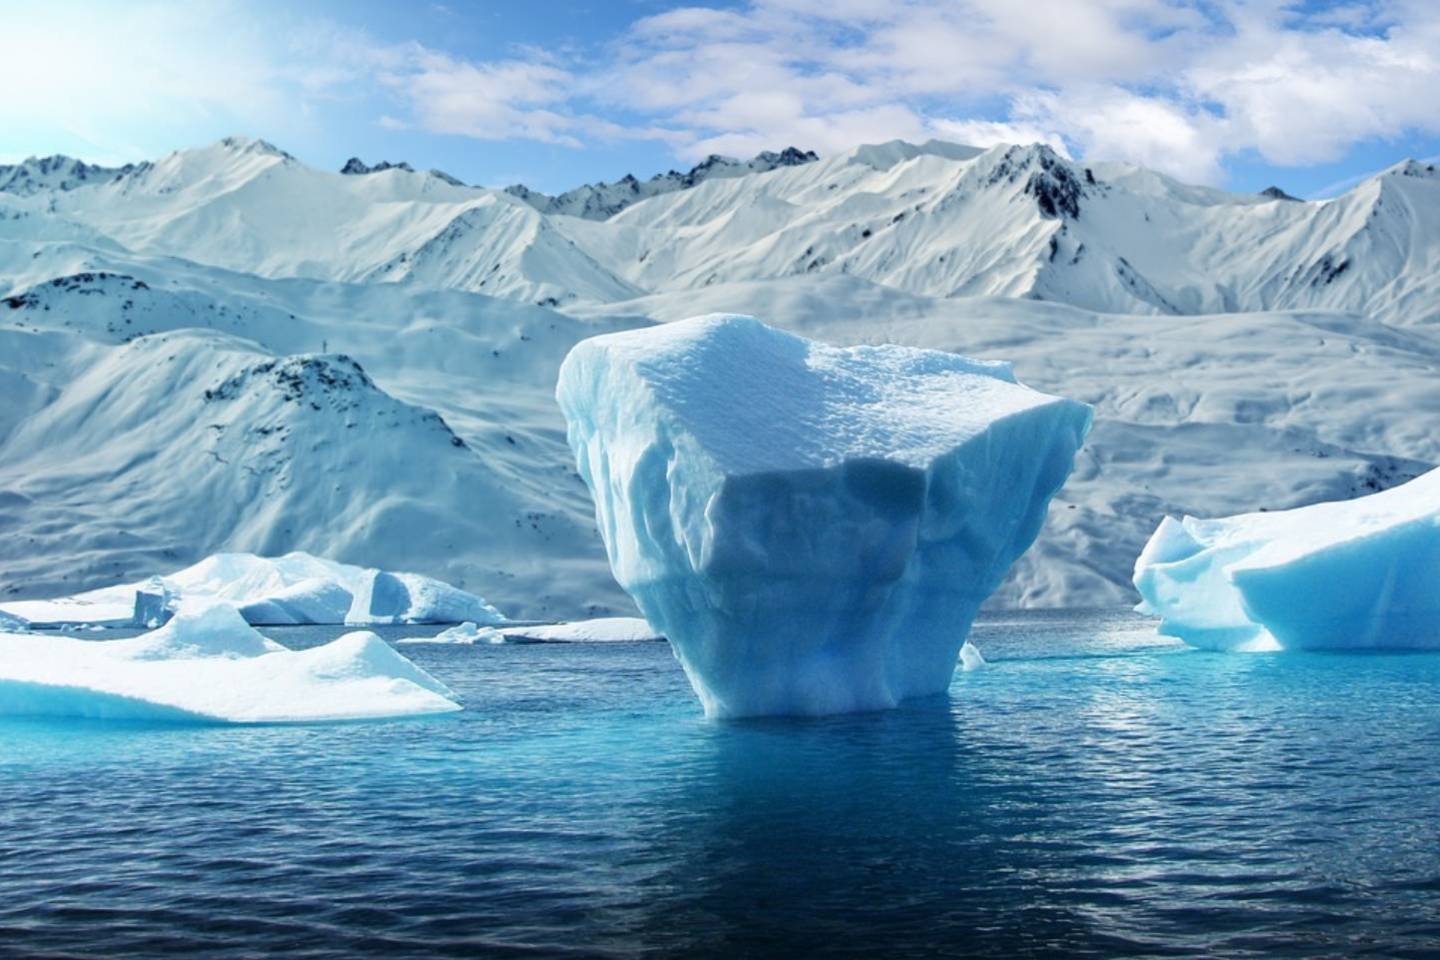 Новости мира / Интересные новости / Остров оказался айсбергом: ученые отправились в новую экспедицию